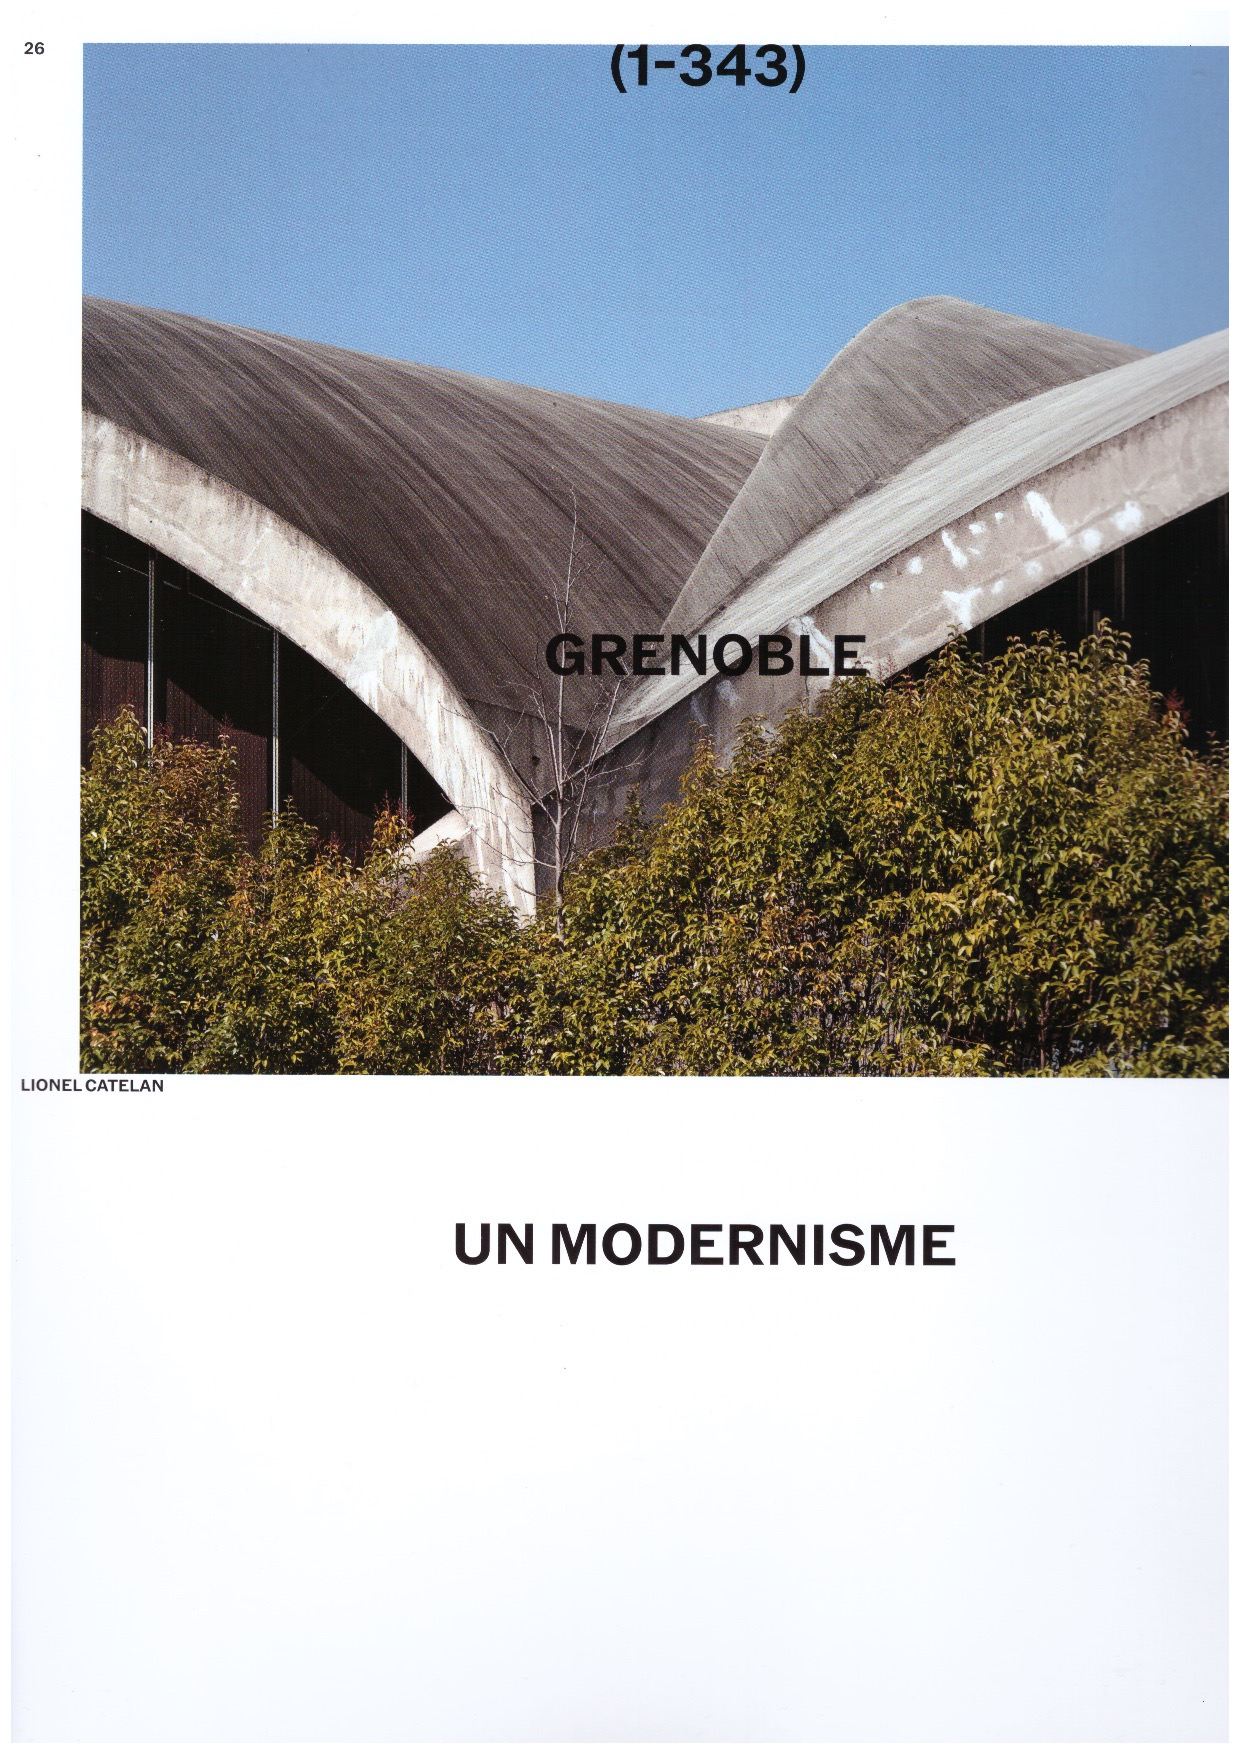 CATELAN, Lionel - Grenoble : un modernisme olympique